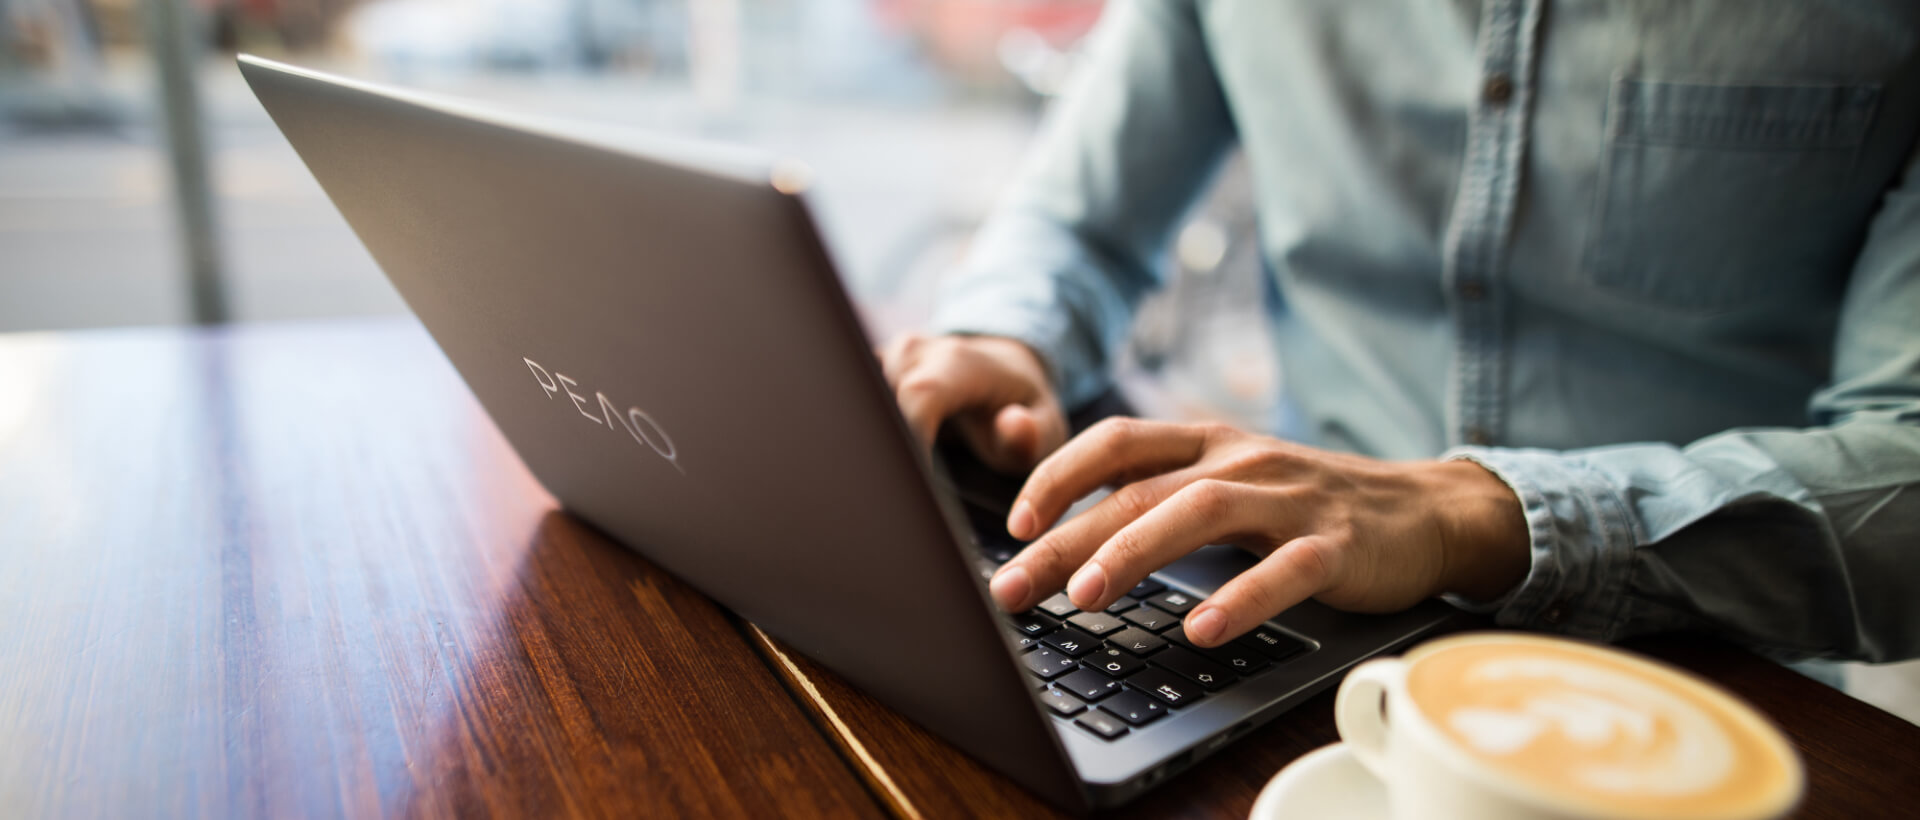 Un home jove escriu sobre un ordinador portàtil de PEAQ, al costat una tassa plena de cafè, està assegut a una cafeteria, vista de prop, panorama